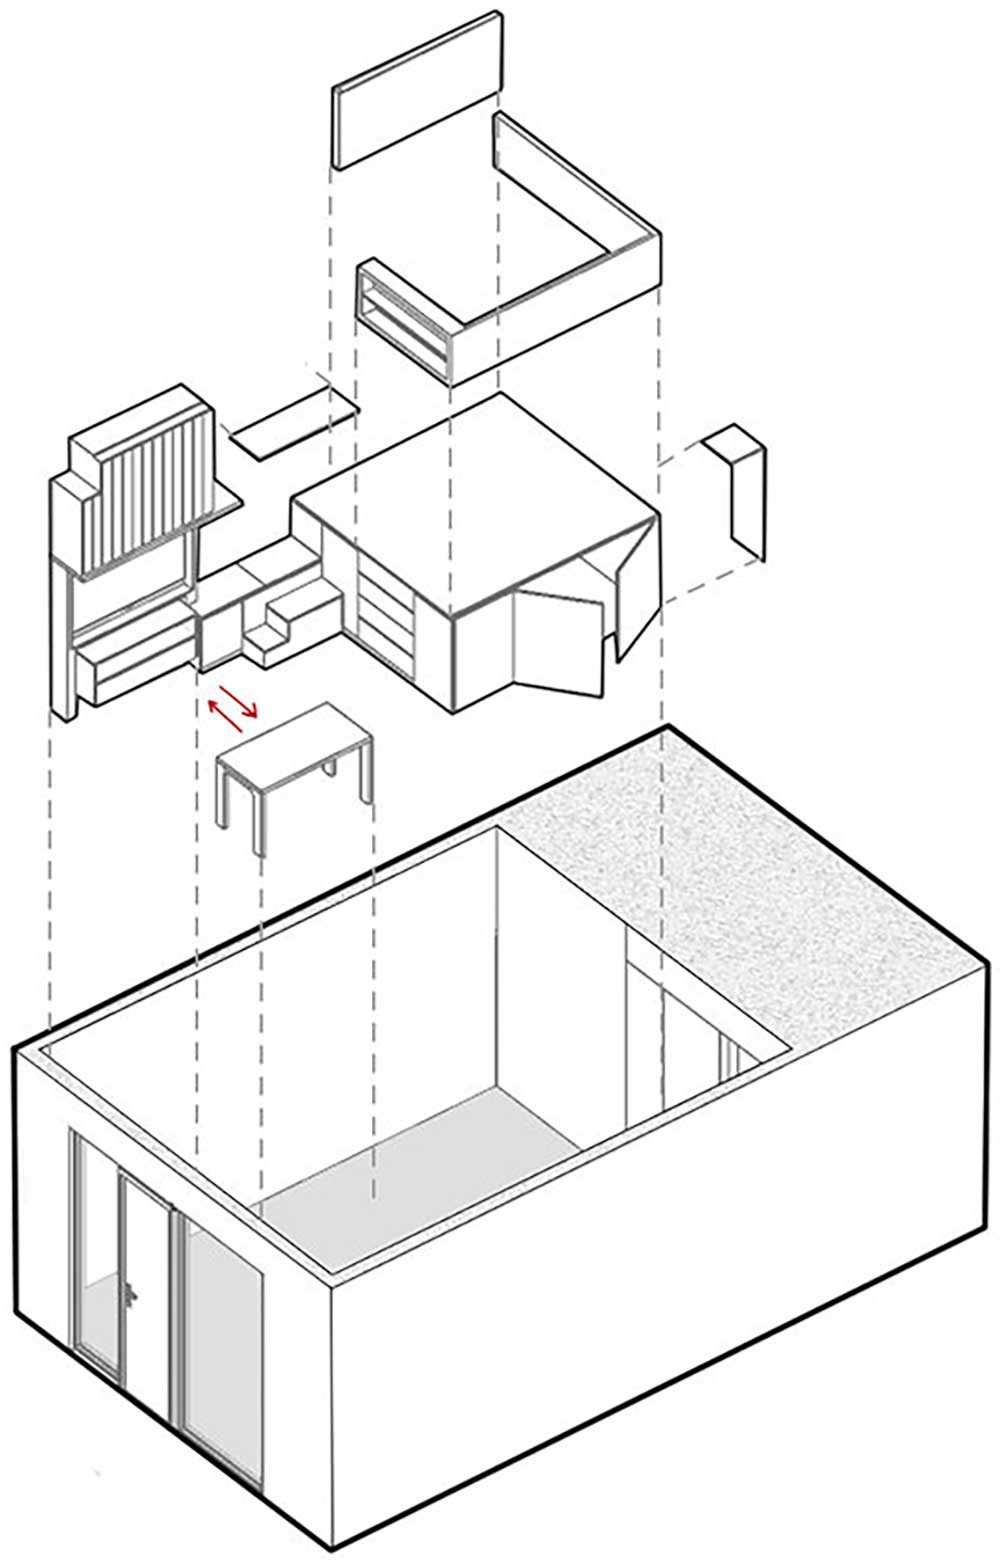 Minigarzon sok tárolóhellyel épített galéria-bútorral, kompakt, multifunkciós megoldásokkal 27m2-en